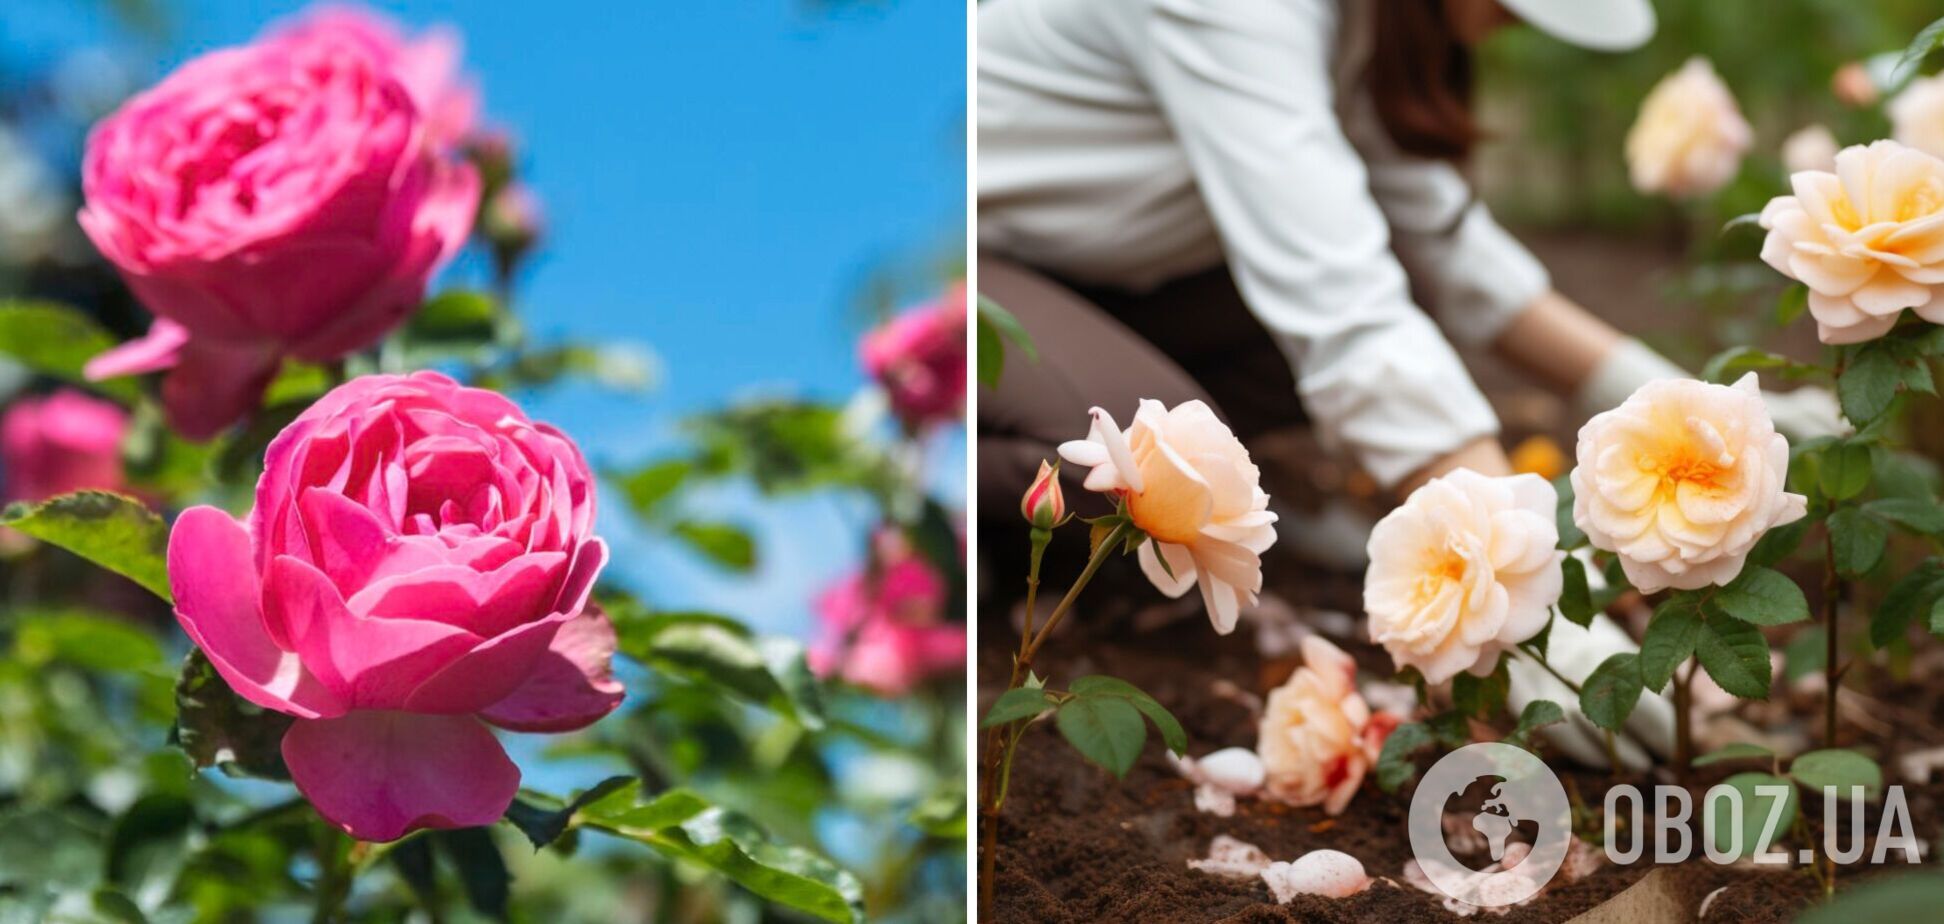 Чим полити троянди, щоби пишно цвіли і краще пахли: просте добриво